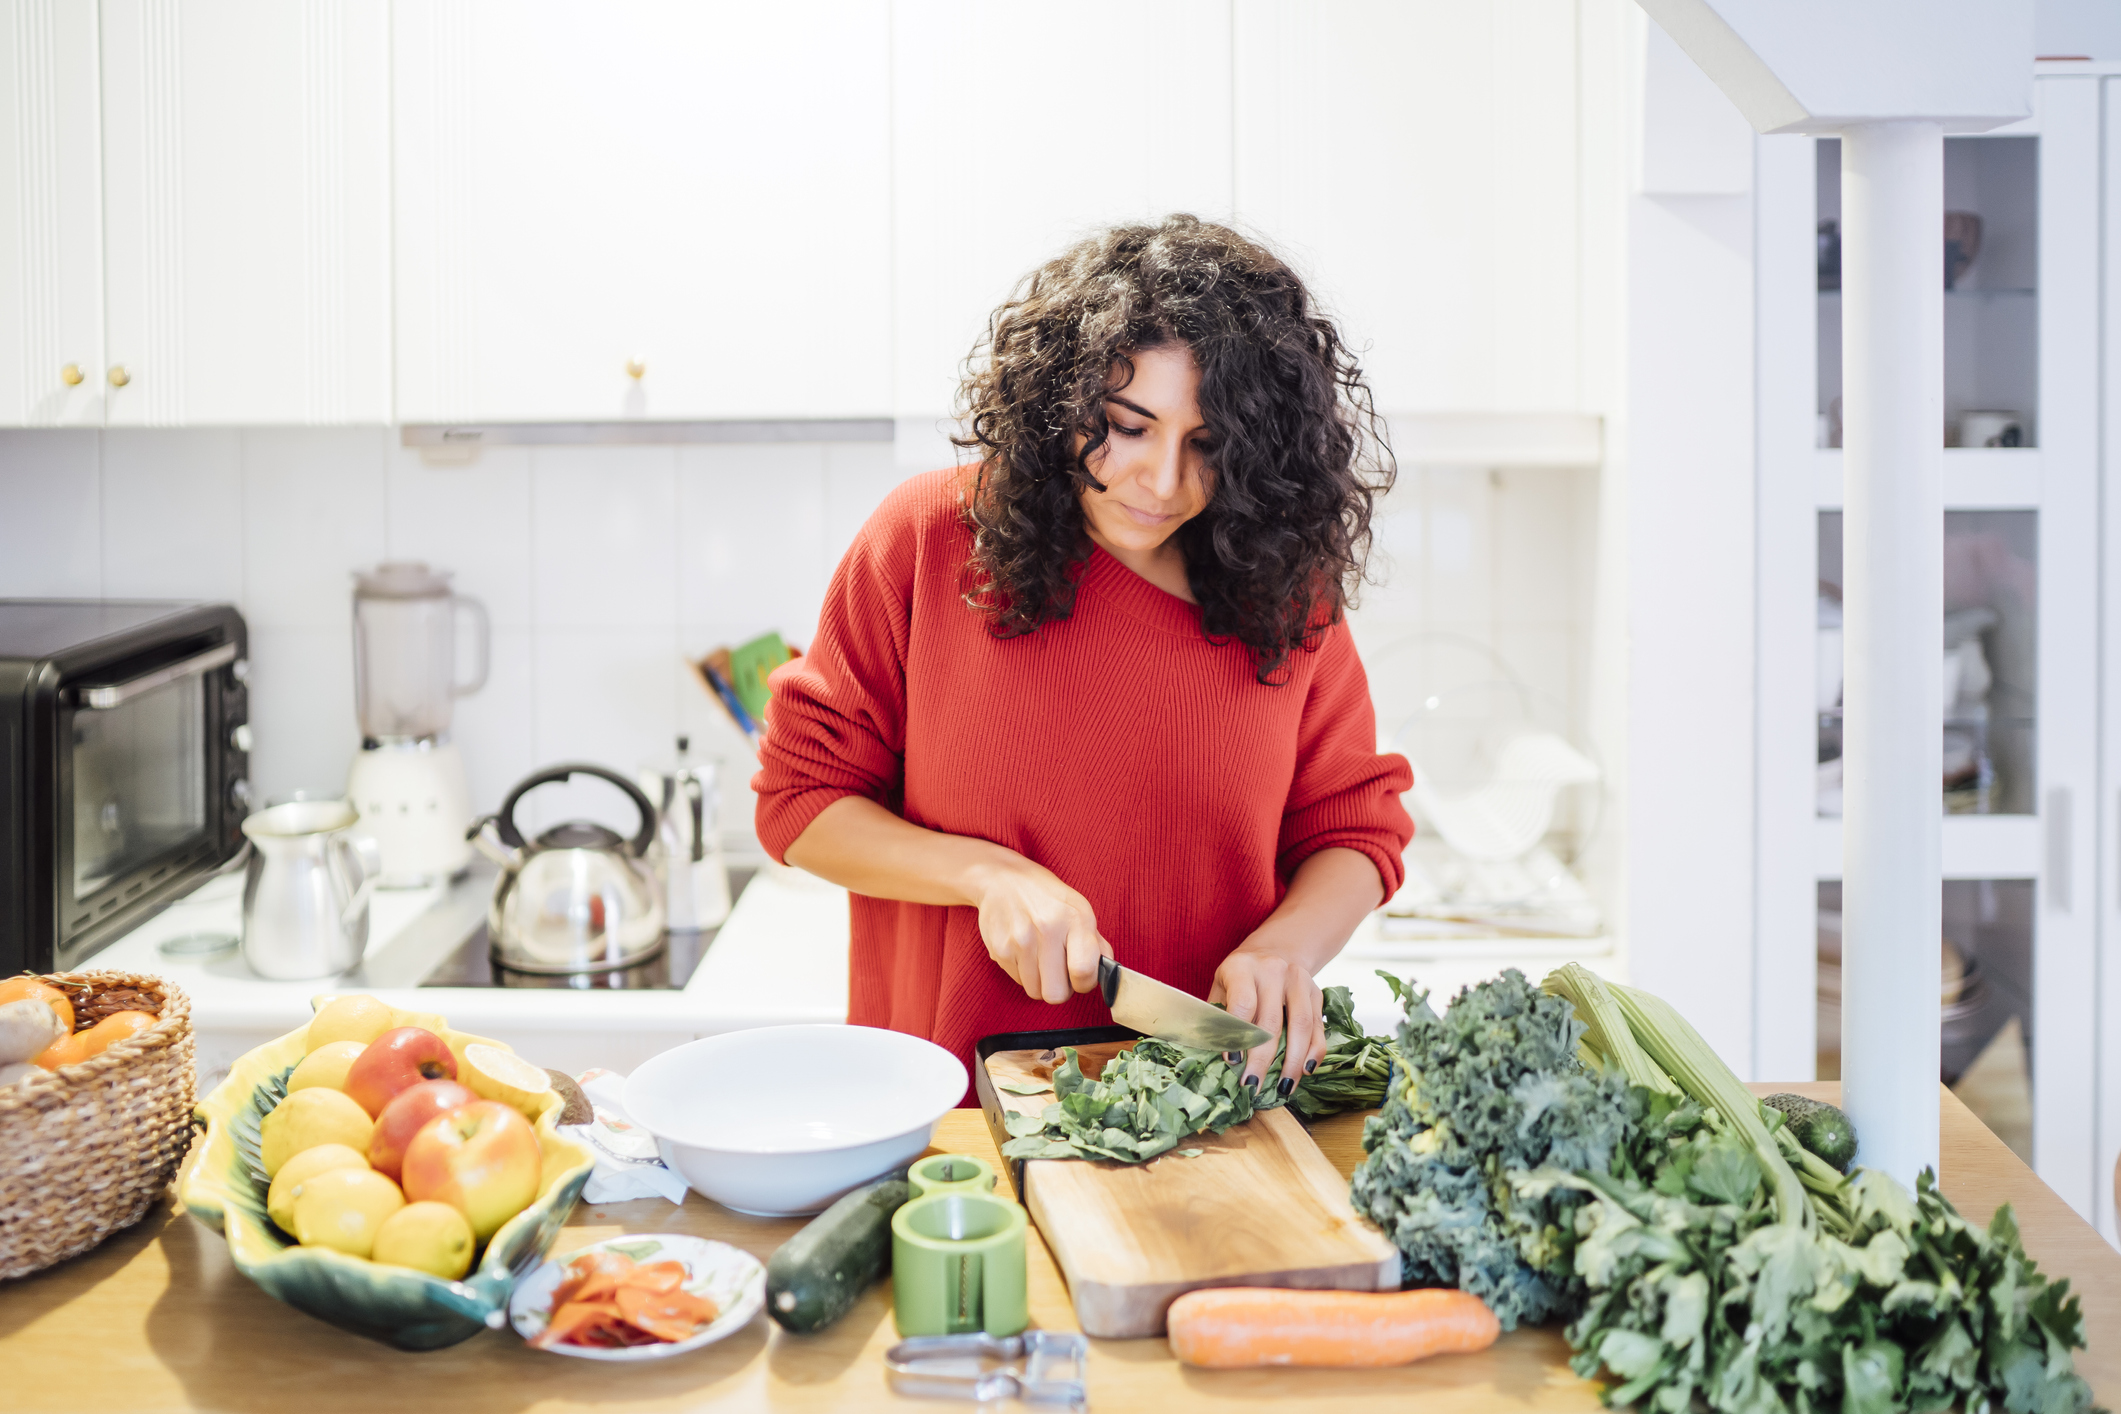 浅黑肤色的女人正在做健康的蔬菜沙拉。